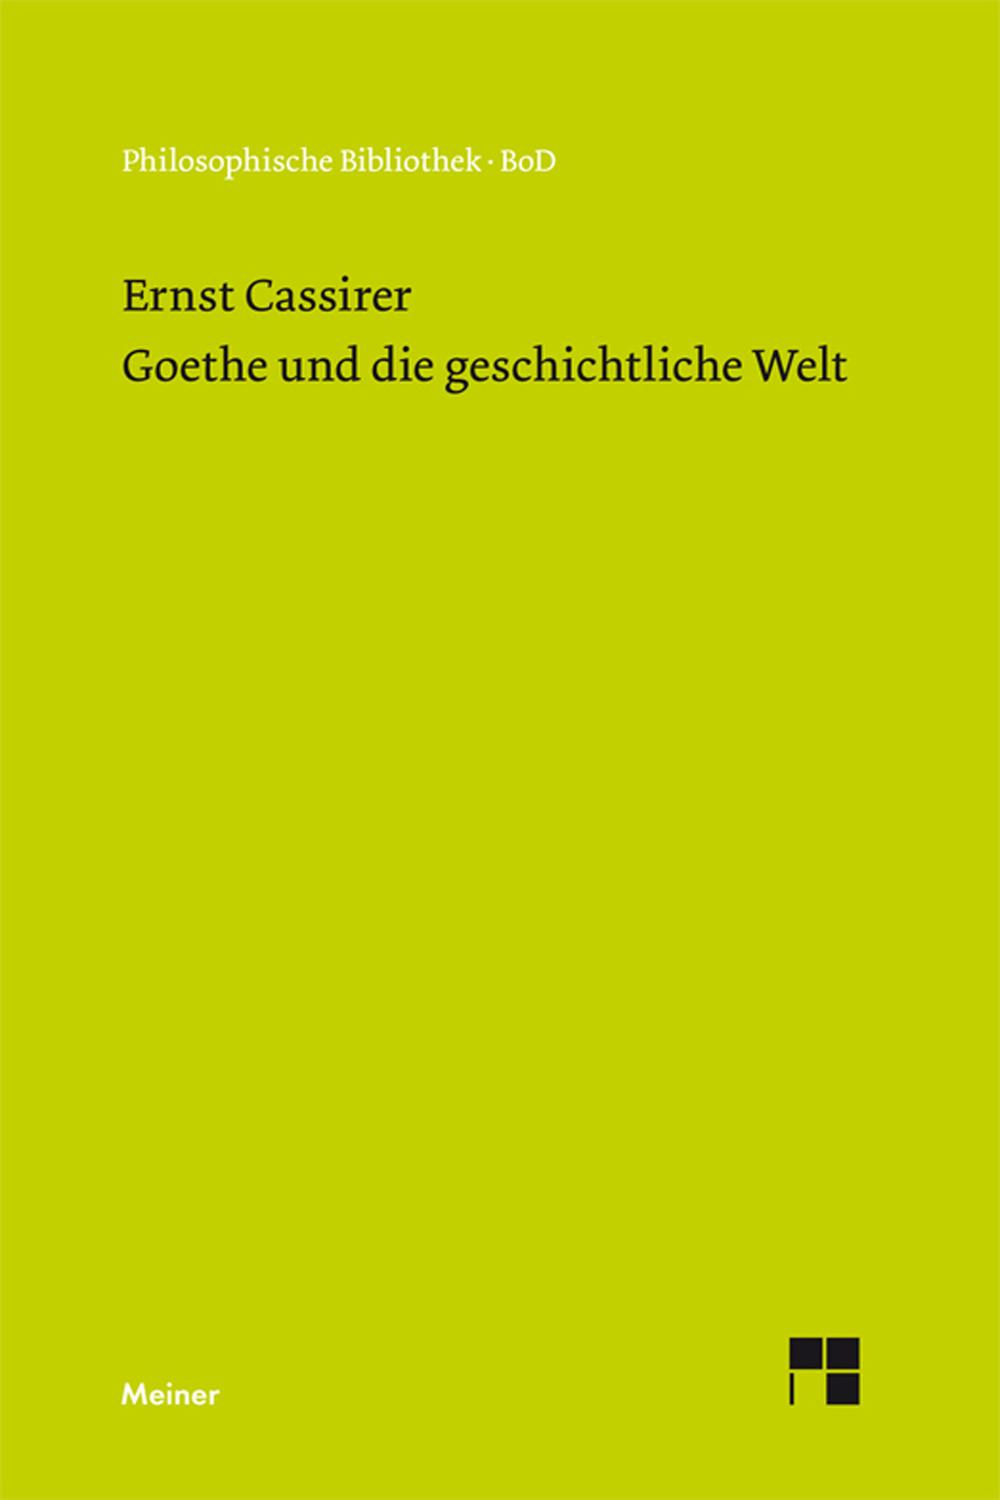 Goethe und die geschichtliche Welt - Ernst Cassirer